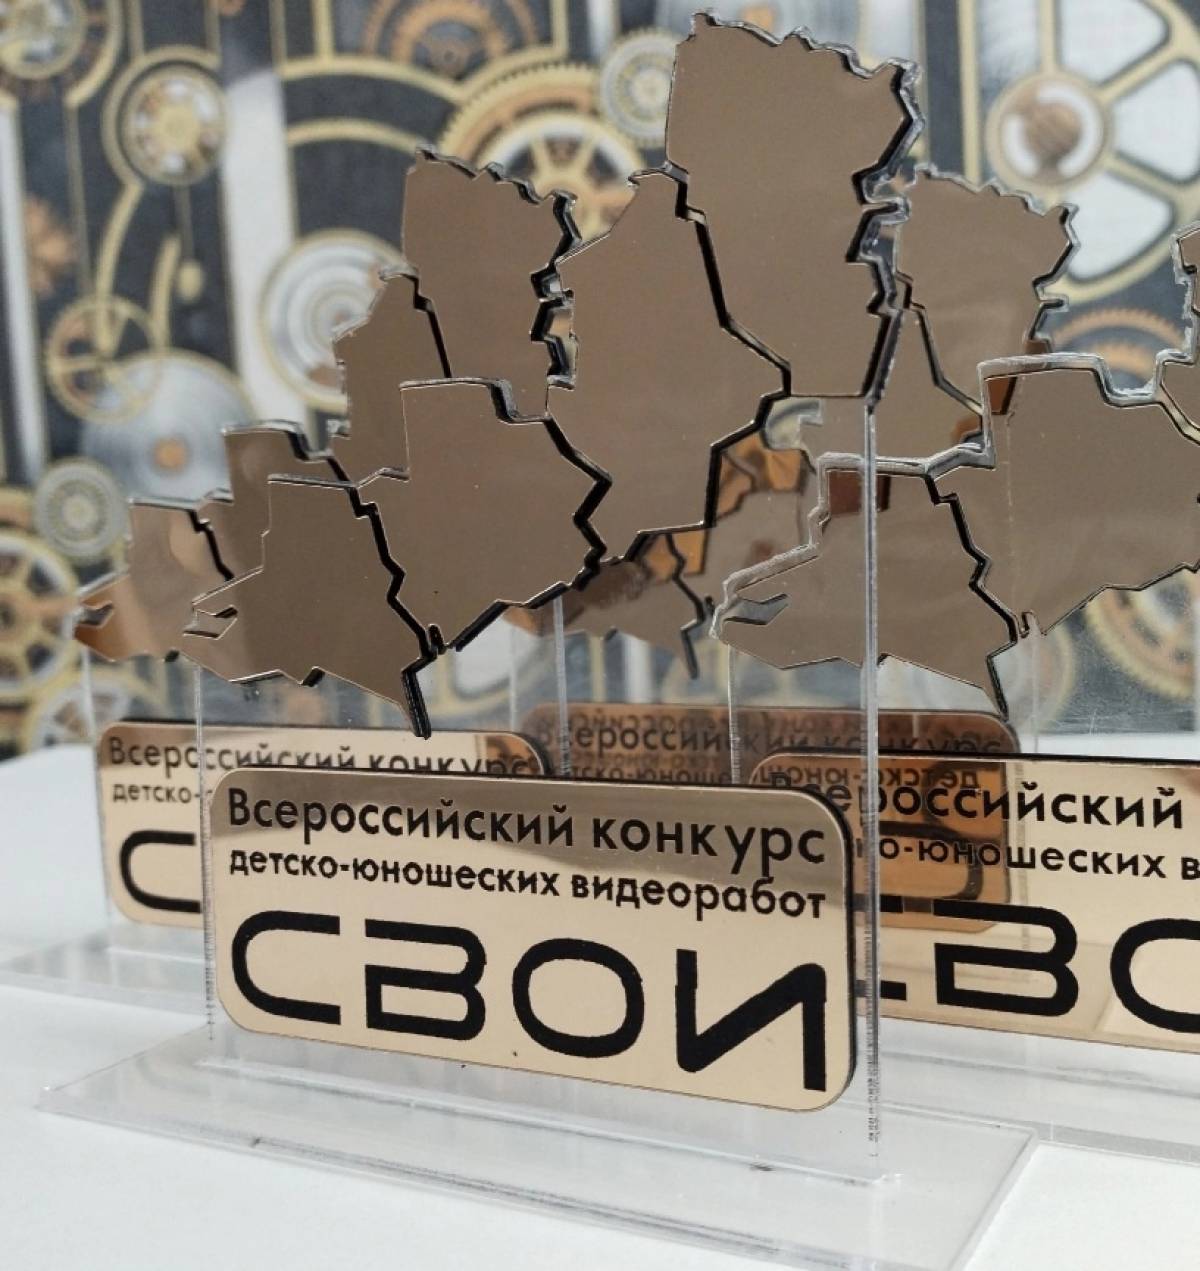 На конкурс было прислано 216 работ из 40 населённых пунктов, в том числе из ДНР и ЛНР.